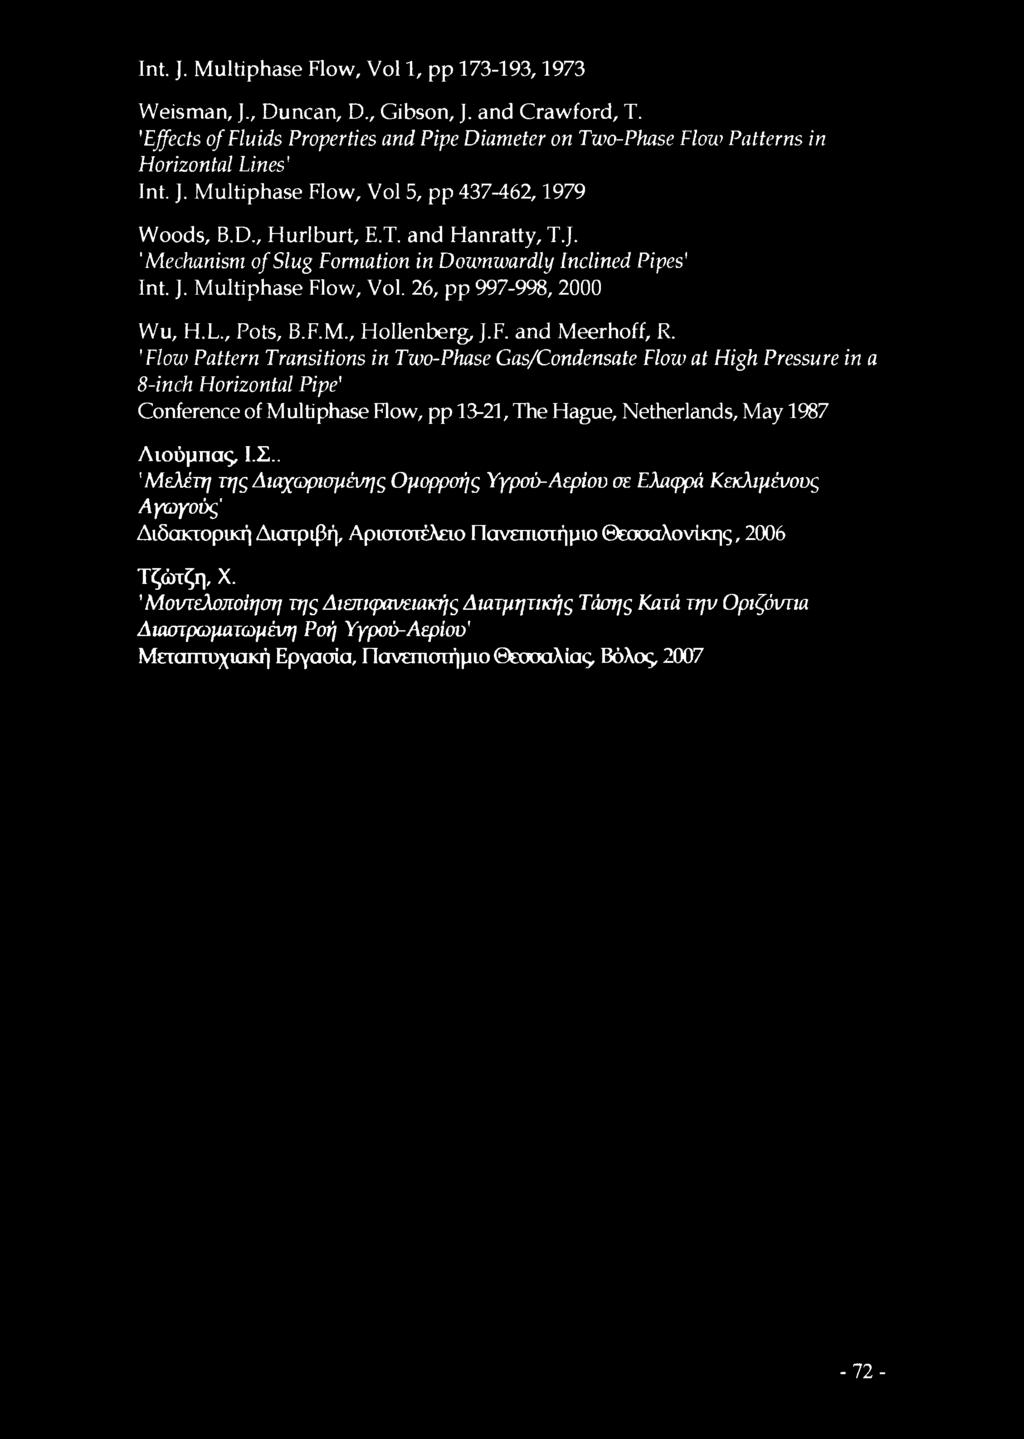 J. Multiphase Flow, Vol. 26, pp 997-998, 2000 Wu, FI.L., Pots, B.F.M., Hollenberg, J.F. and Meerhoff, R.